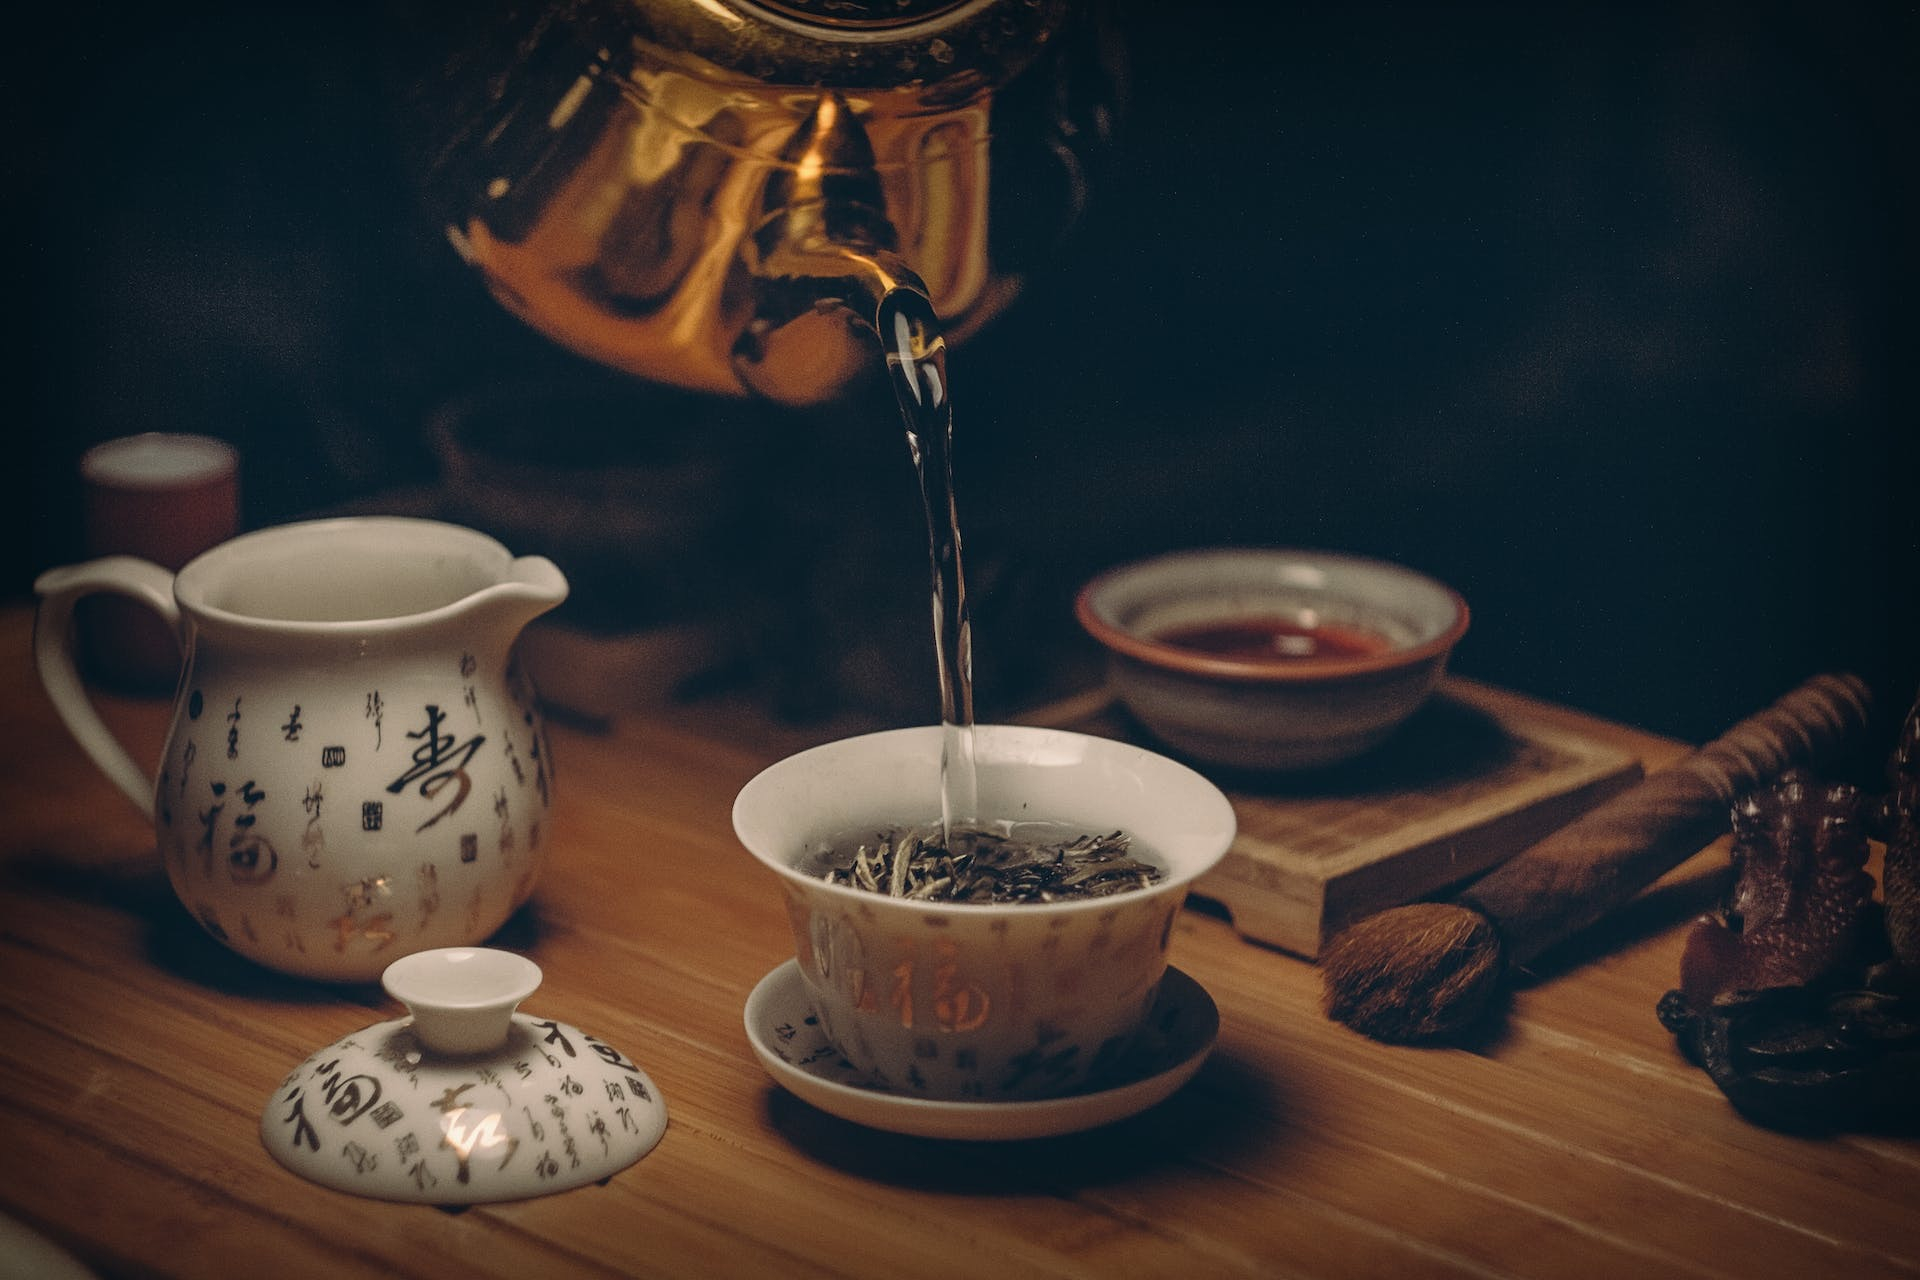 中国茶蓋碗。さまざまな器があるのが中国茶の特徴